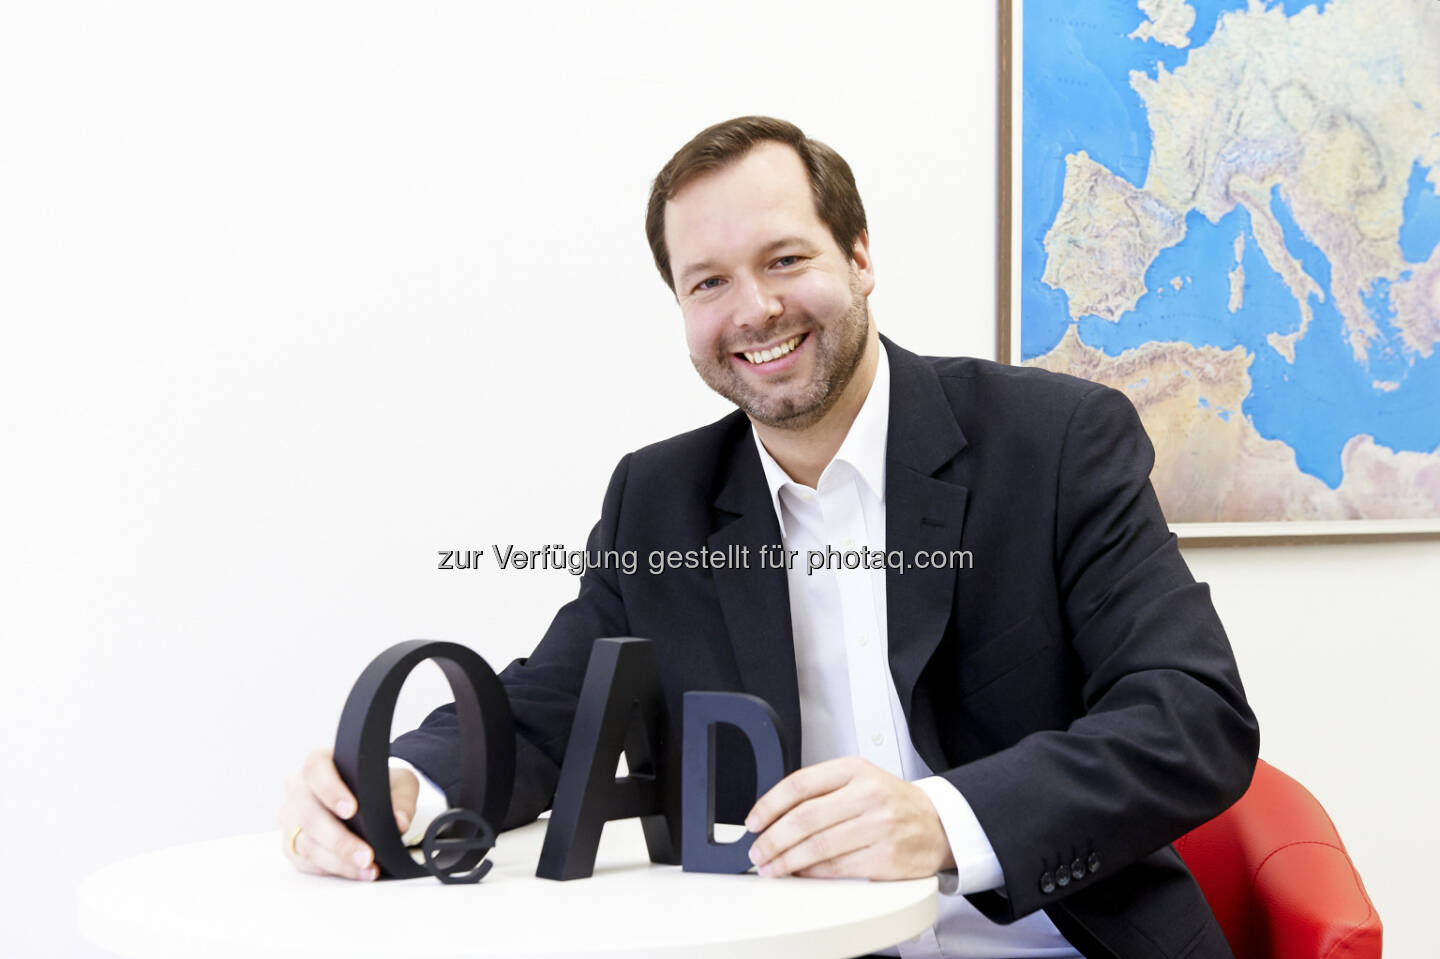 Stefan Zotti übernimmt mit 1. Jänner 2016 die Geschäftsführung der OeAD (Österreichische Austauschdienst)-GmbH : Fotocredit: OeAD/Sabine Klimpt